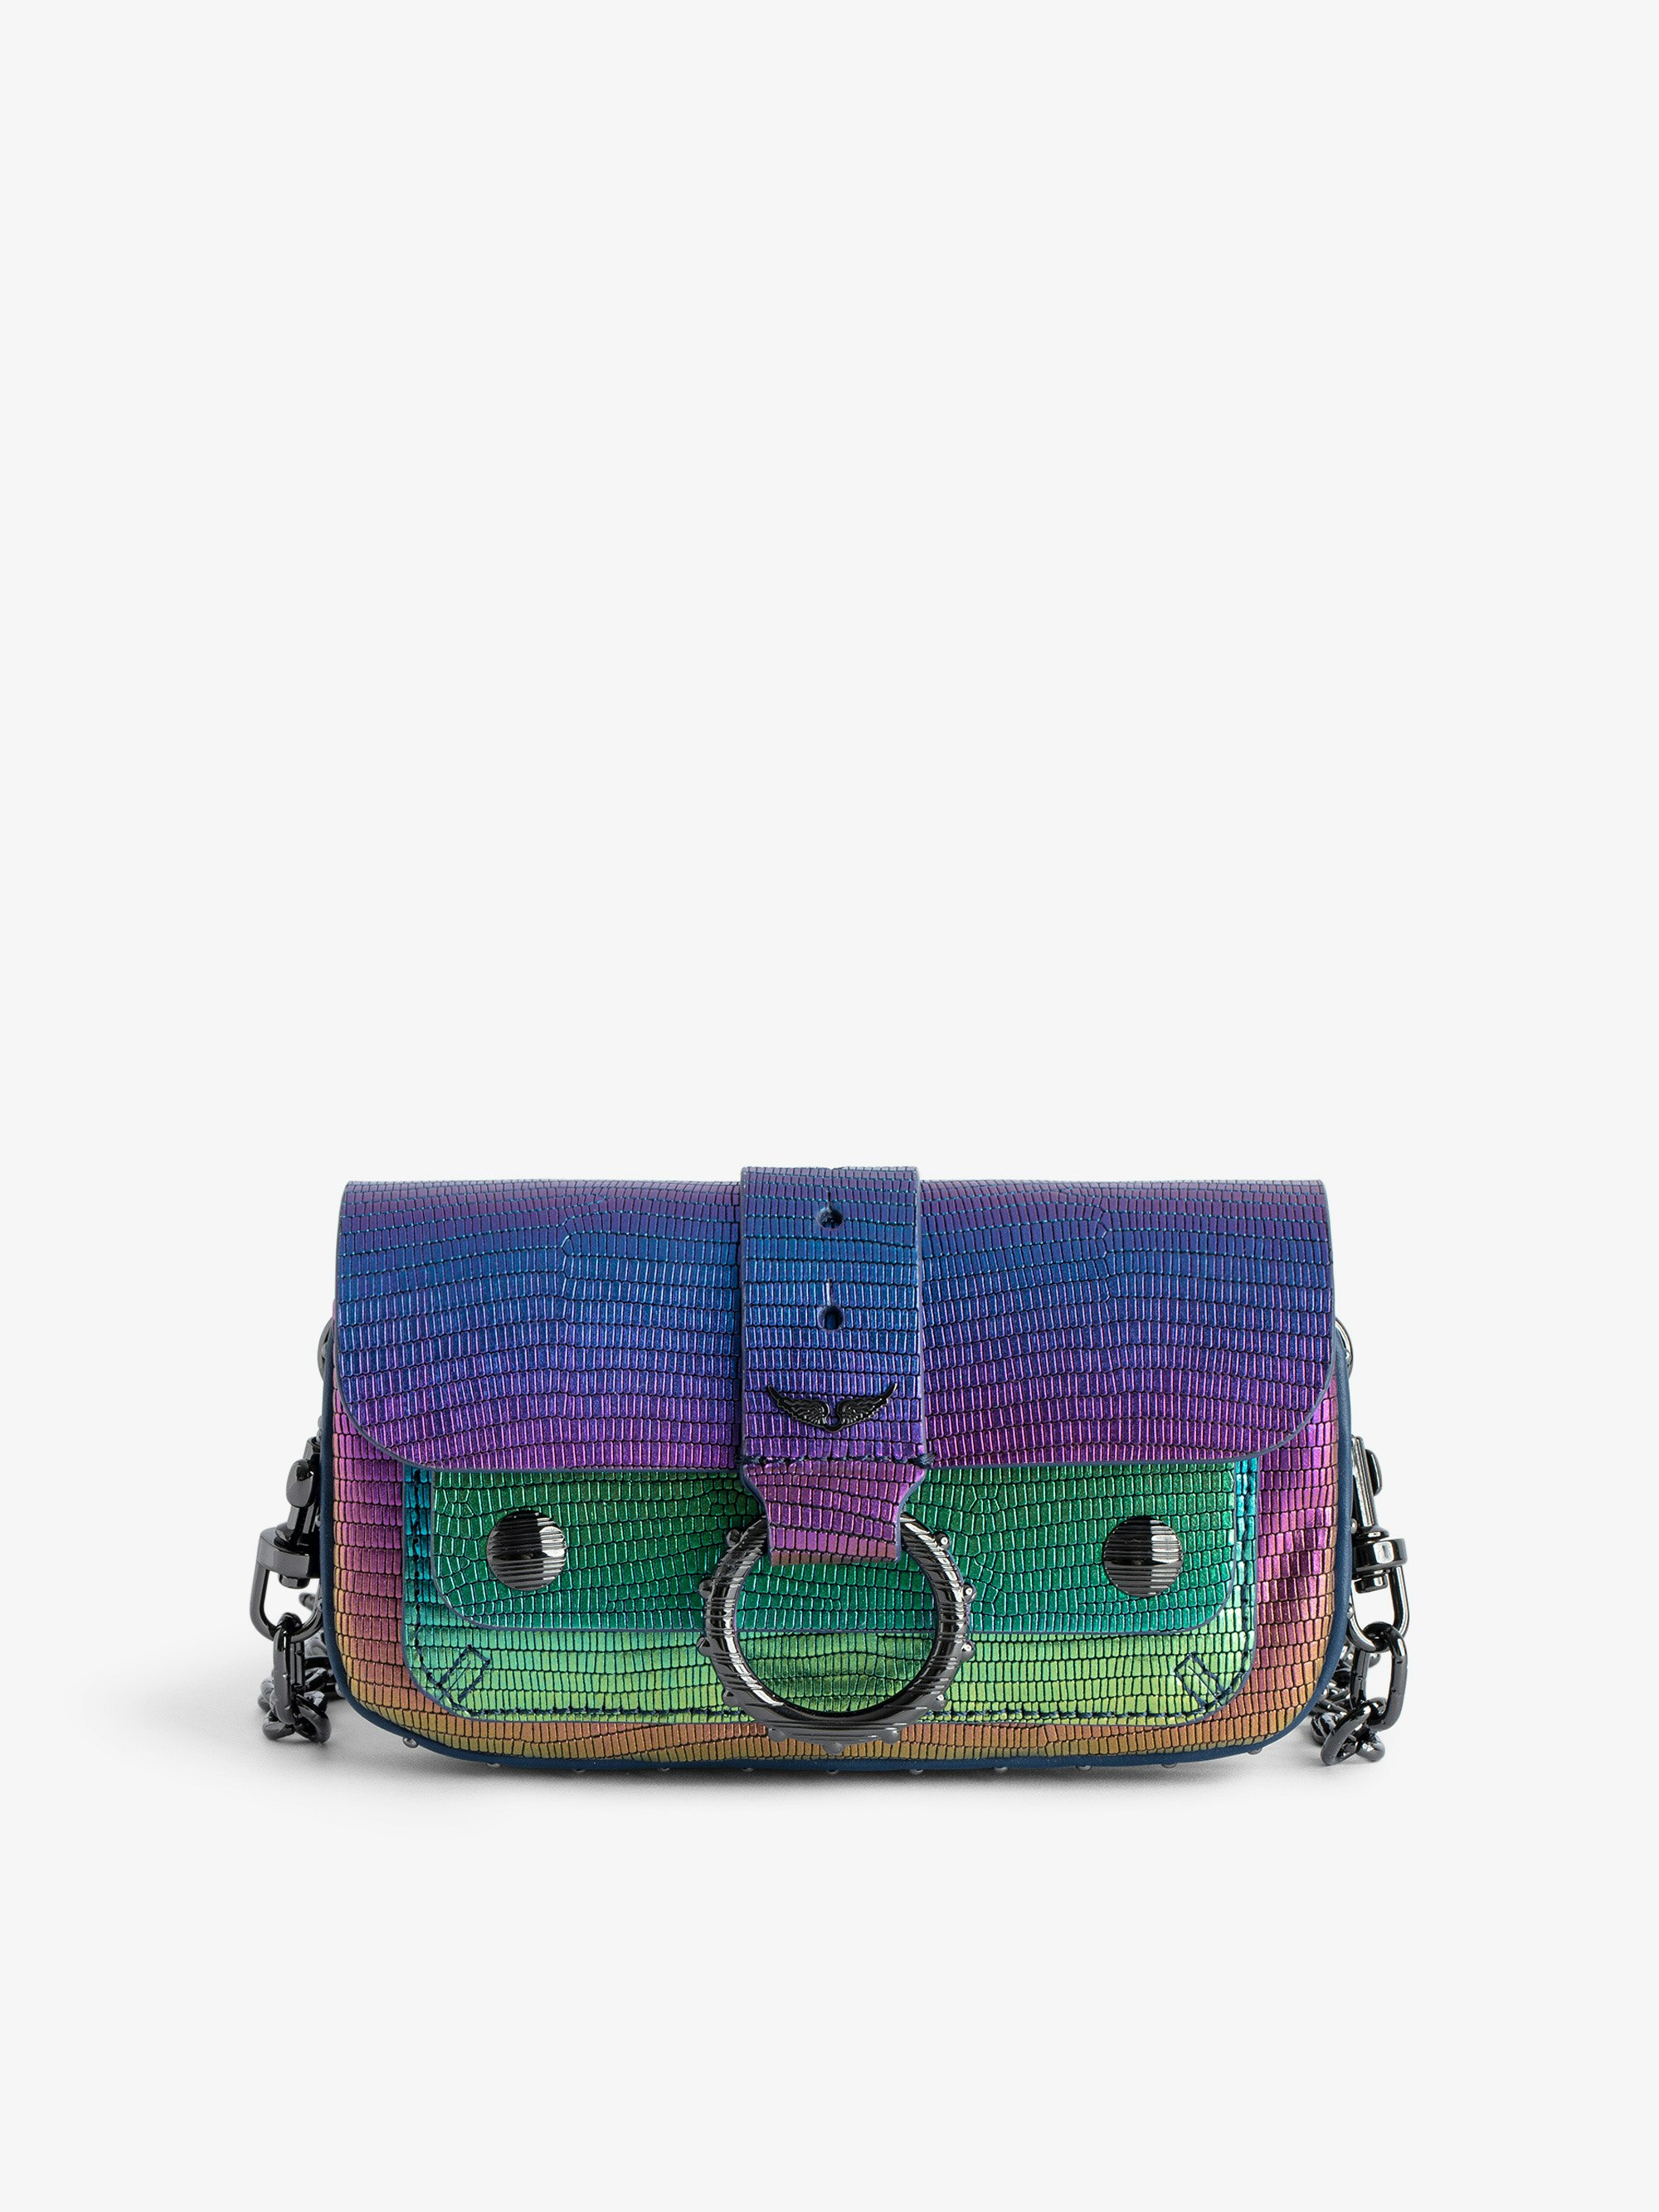 Kate Wallet Embossed Metallic Bag - Women’s rainbow iguana-embossed metallic leather mini bag with metal chain and leather loop.